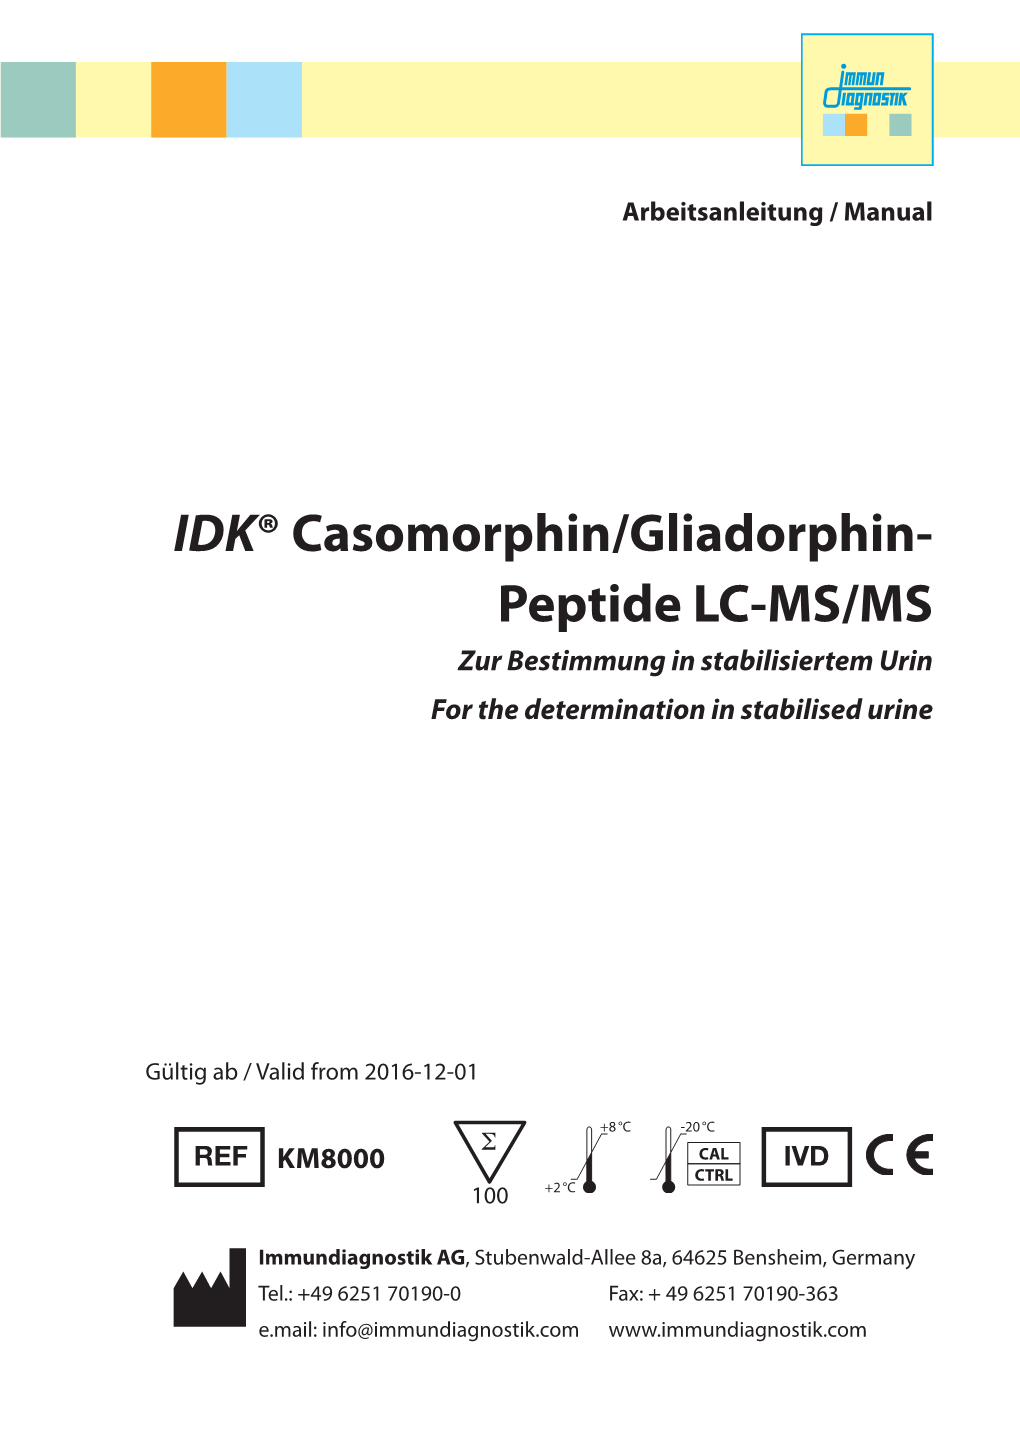 IDK® Casomorphin/Gliadorphin- Peptide LC-MS/MS Zur Bestimmung in Stabilisiertem Urin for the Determination in Stabilised Urine